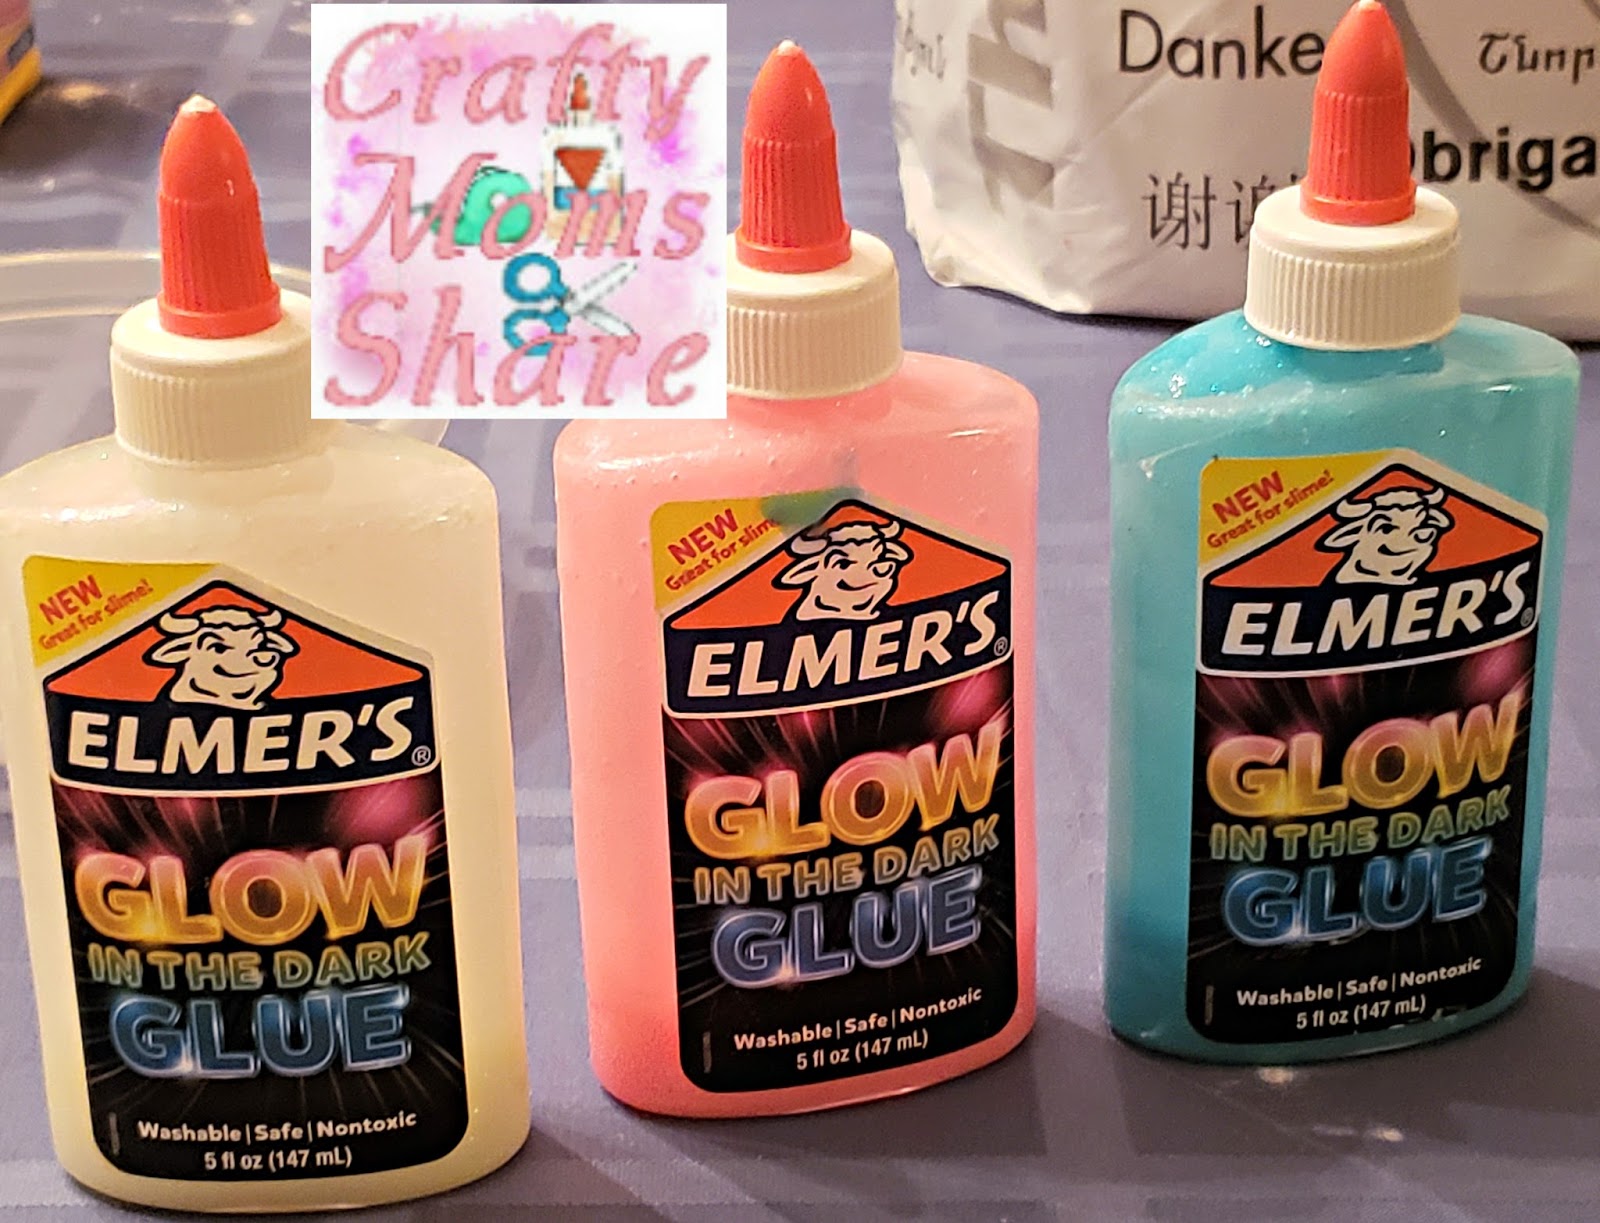 Crafty Moms Share: Elmer's Glow in the Dark Glue -- a Crafty